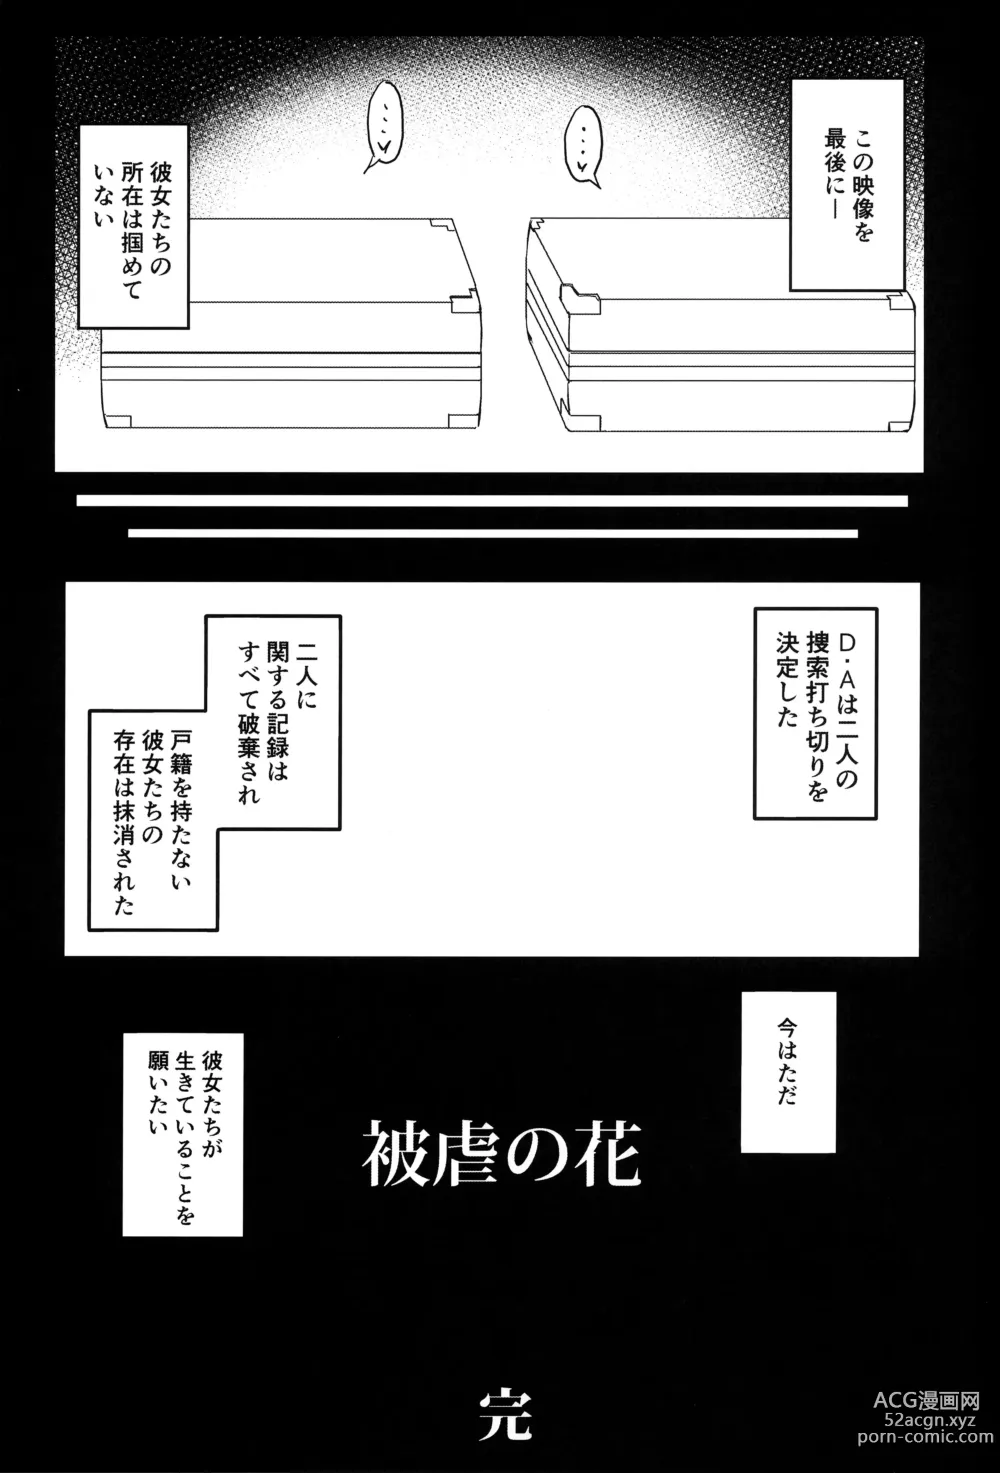 Page 28 of doujinshi Higyaku no Hana 2